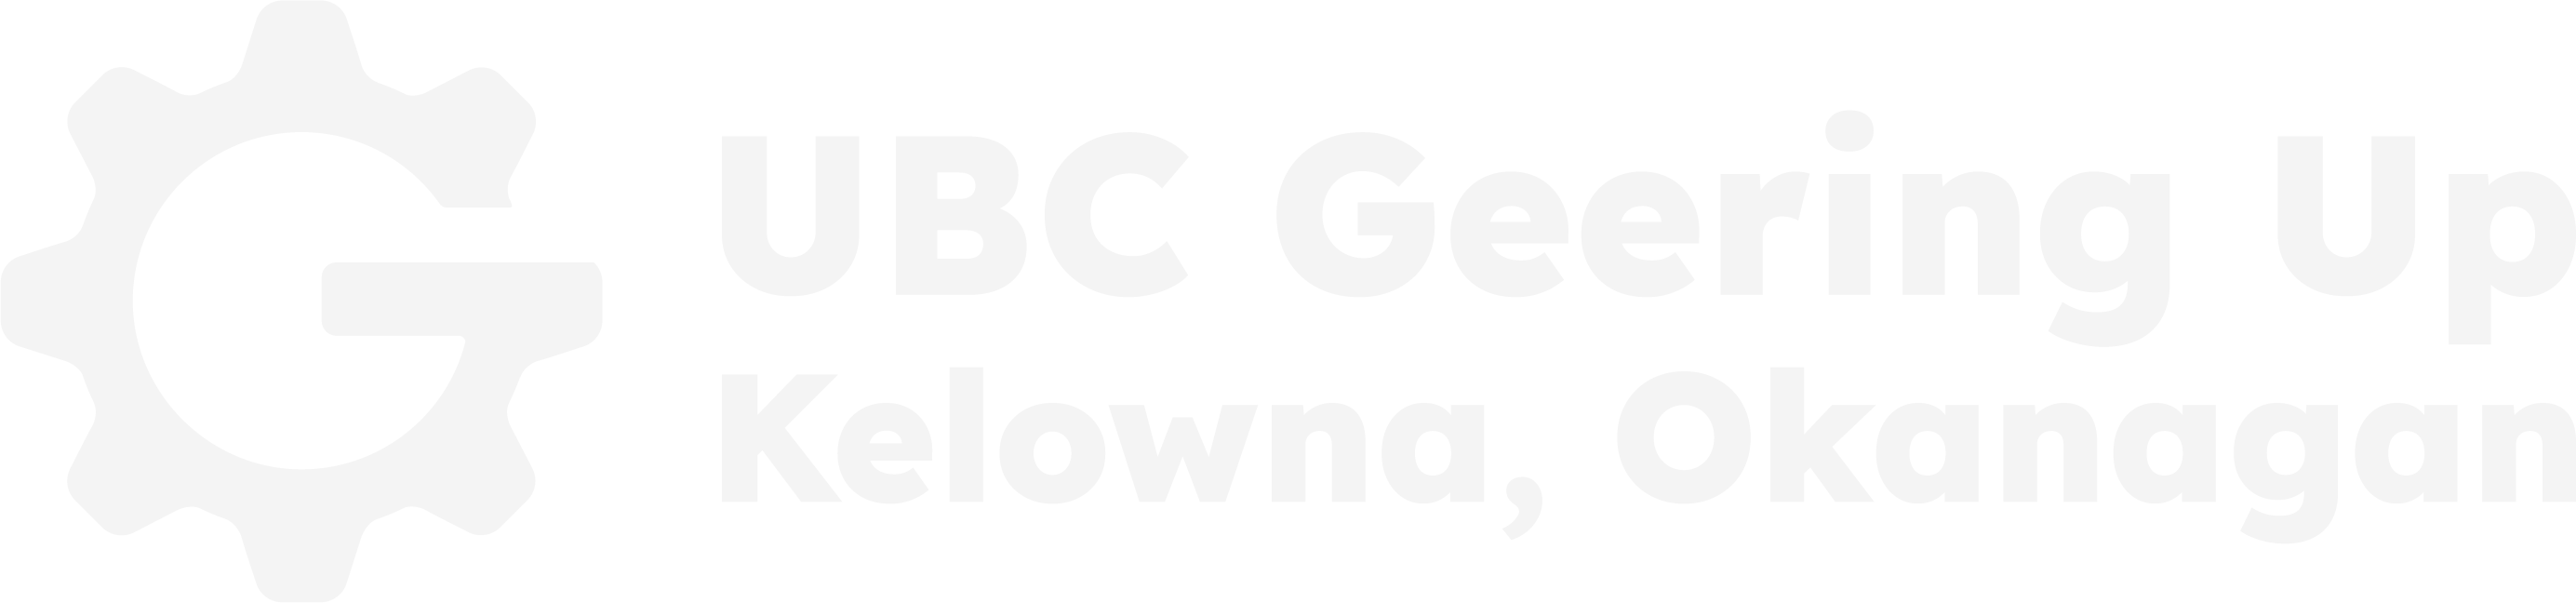 UBC Geering Up Kelowna Okanagan